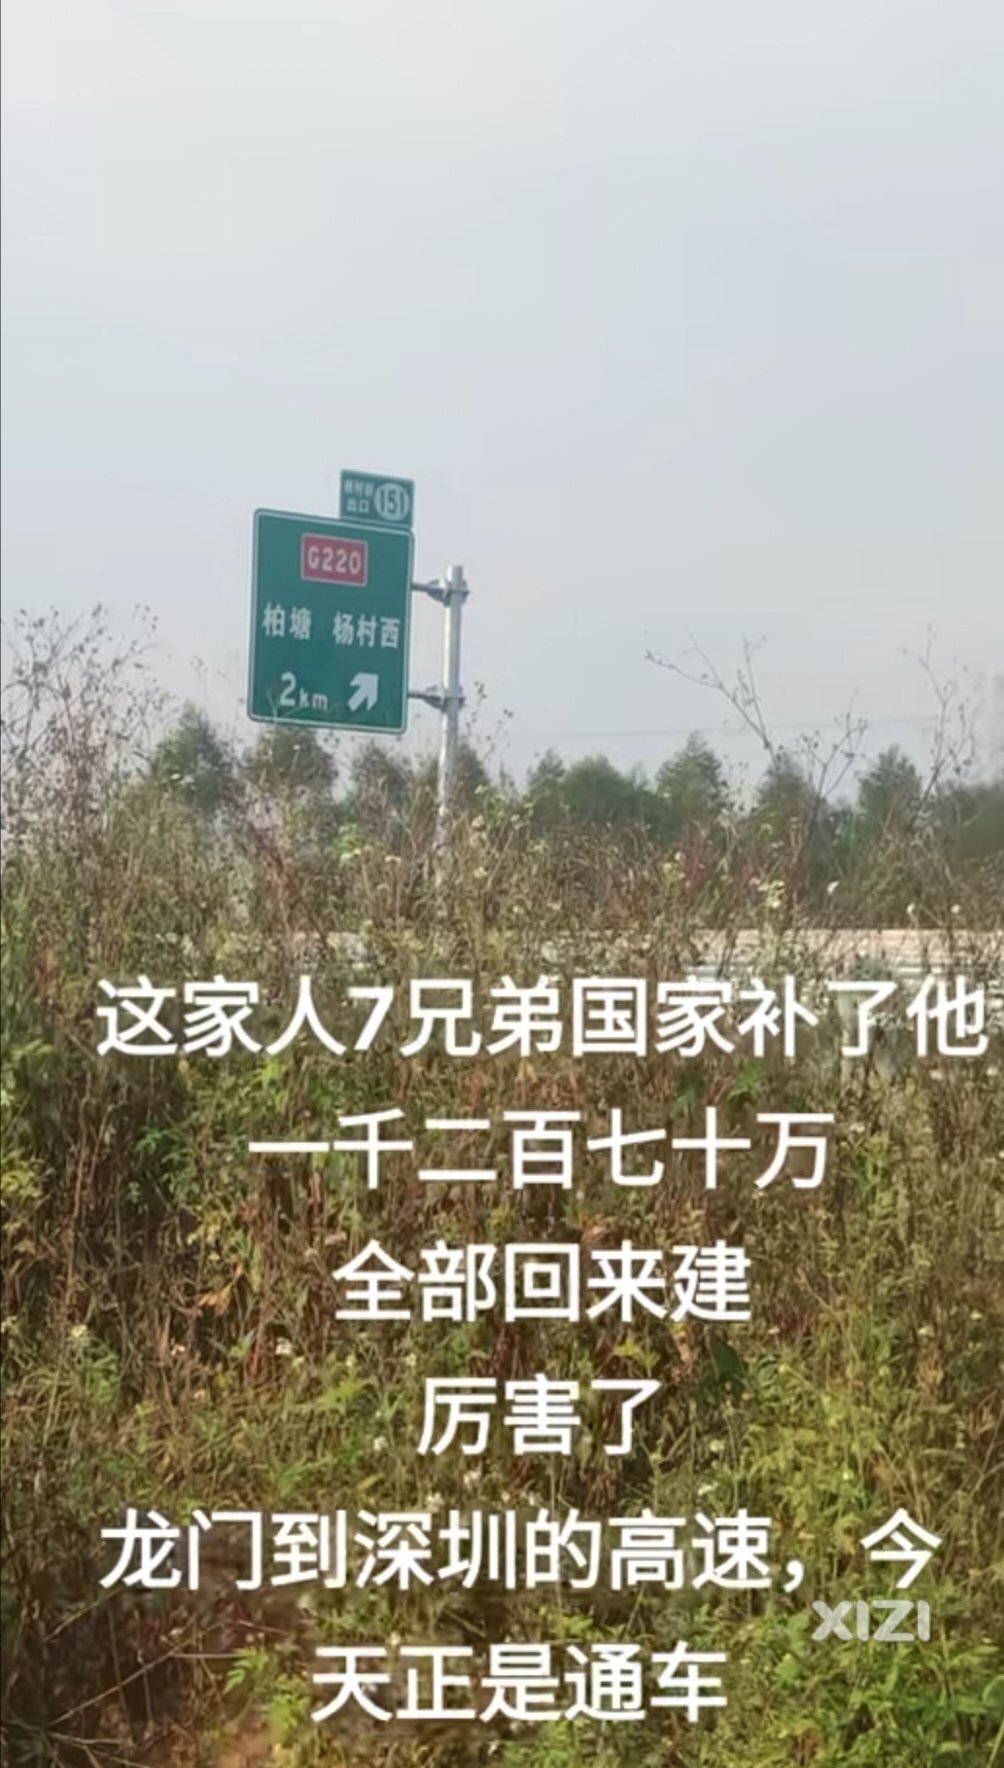 韶惠高速让博罗龙门沿线改变命运。惠东也应该尽快推动河惠汕高速建设